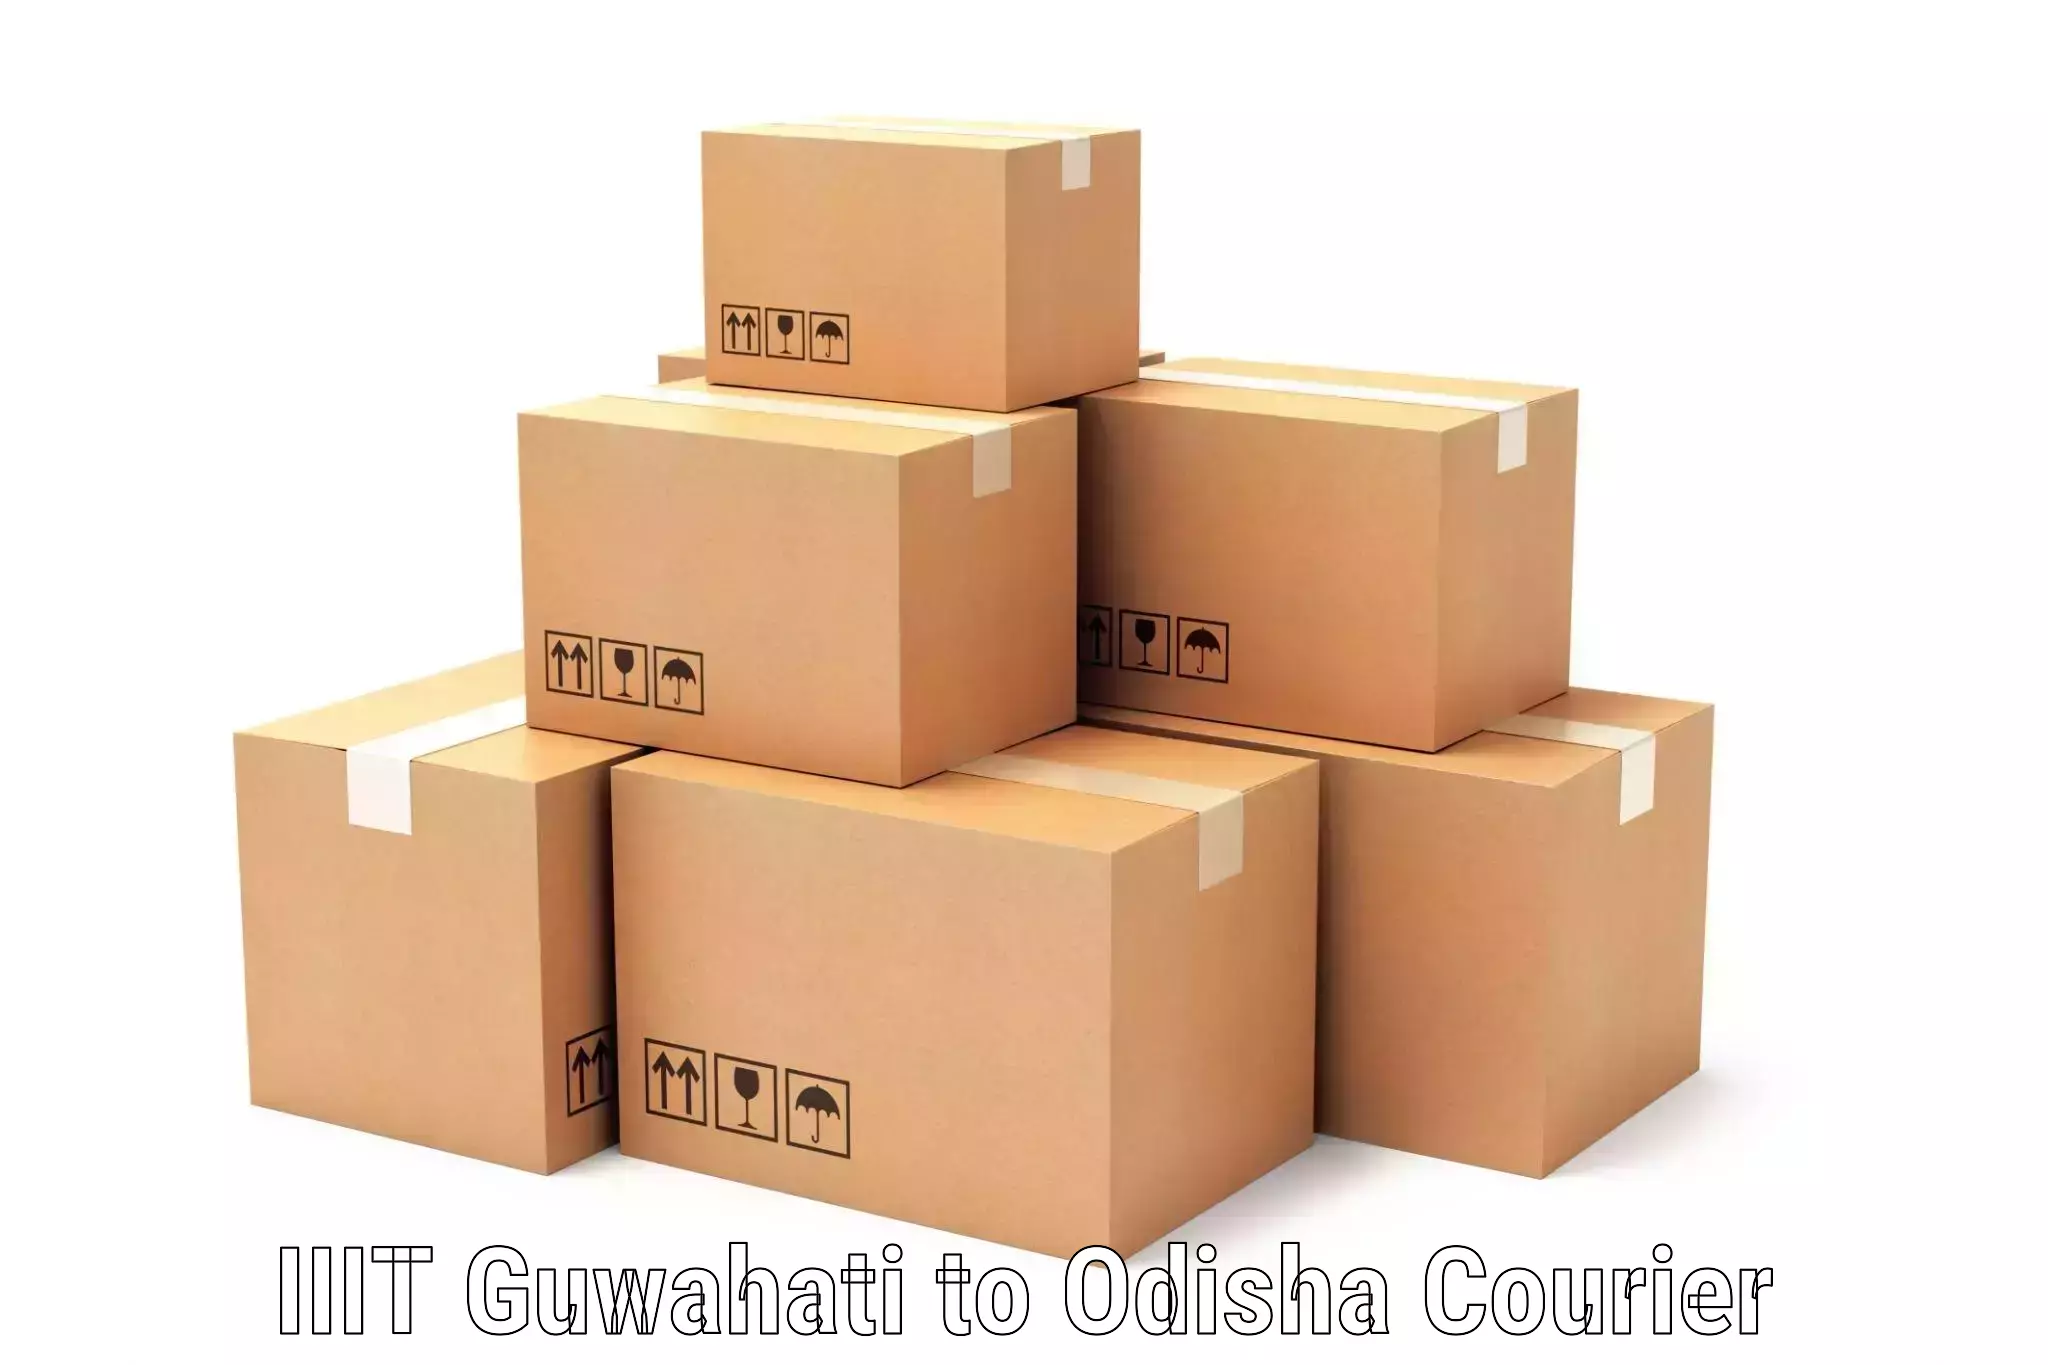 Premium courier services IIIT Guwahati to Odisha